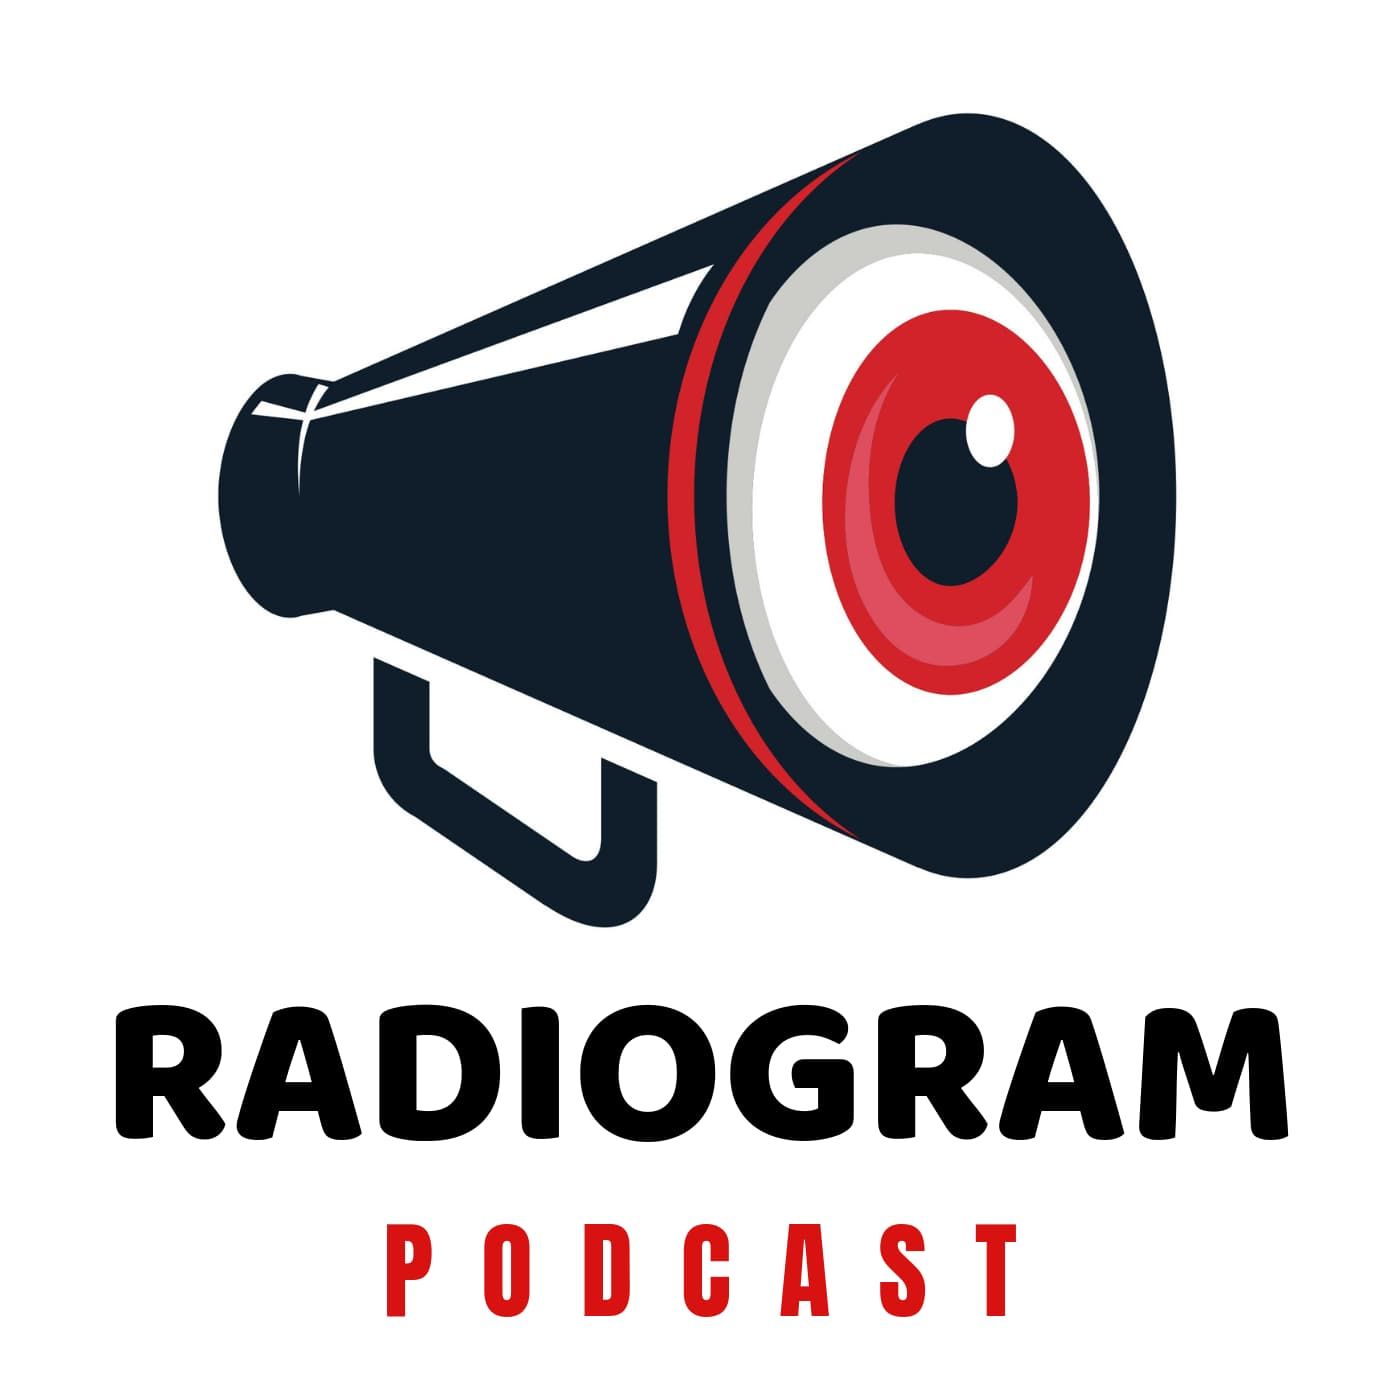 Radiogram podcast show image